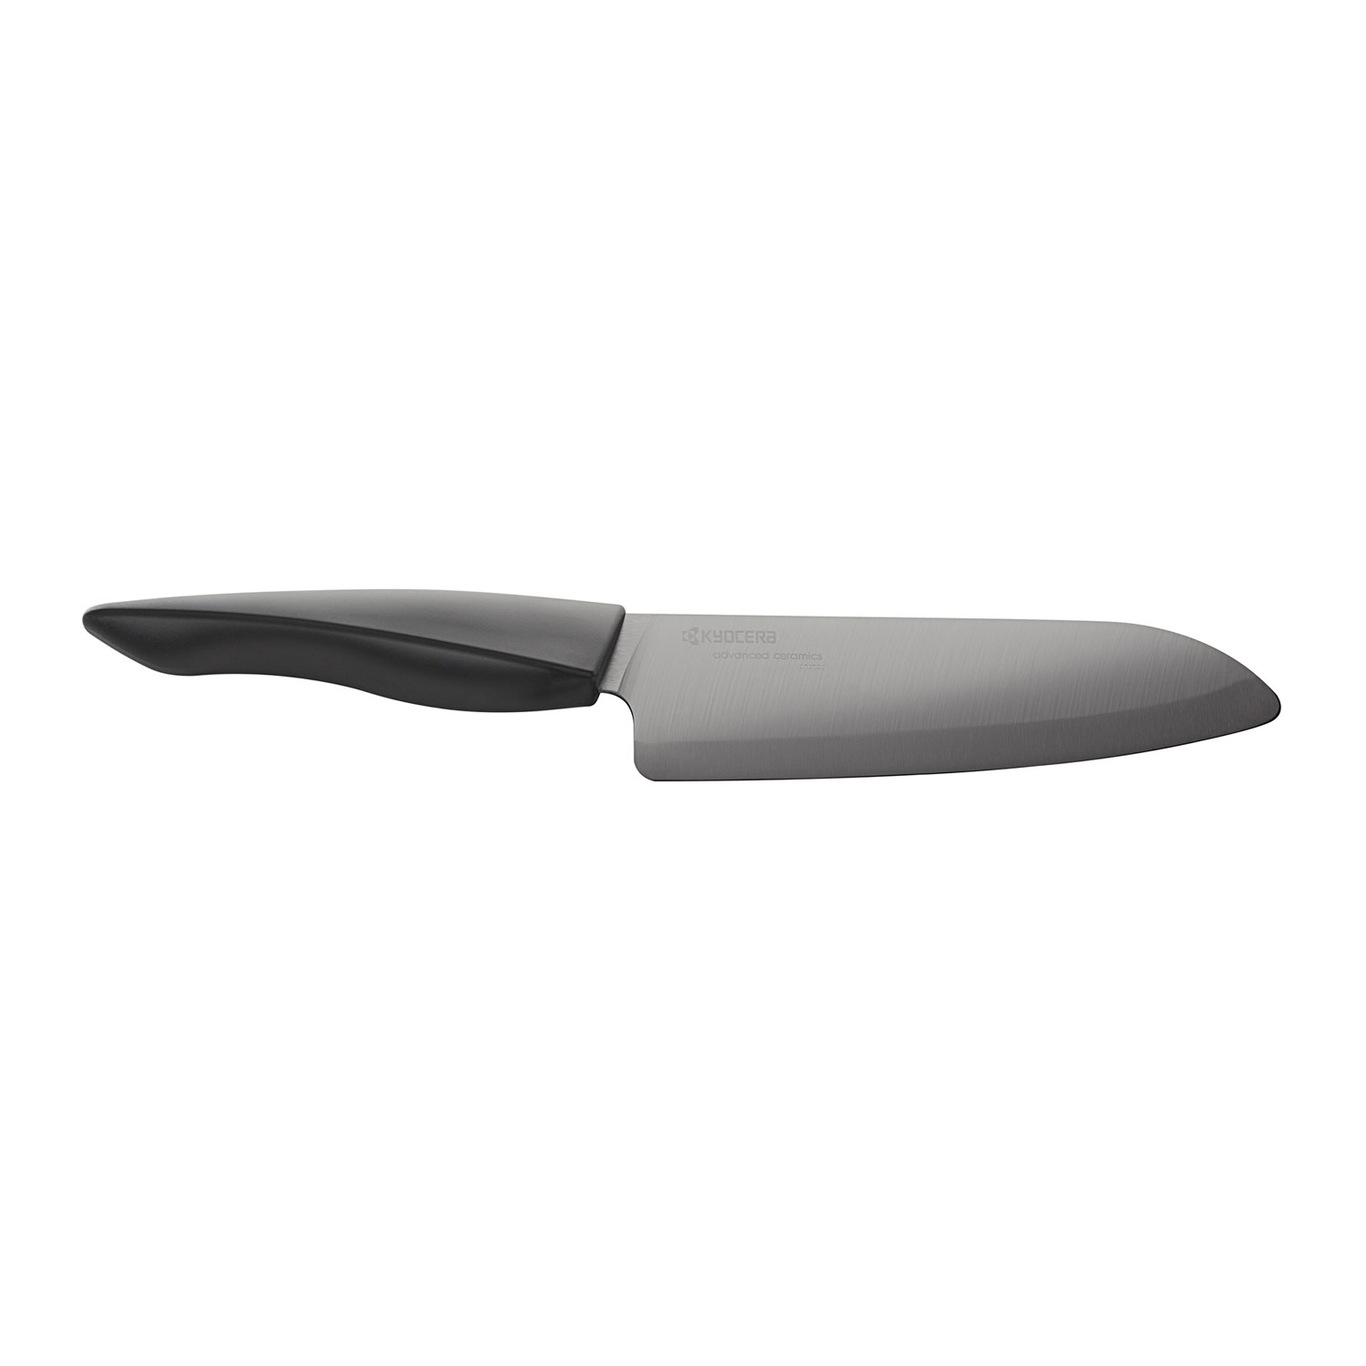 Shin Küchenmesser / Santokumesser 16 cm, Schwarz